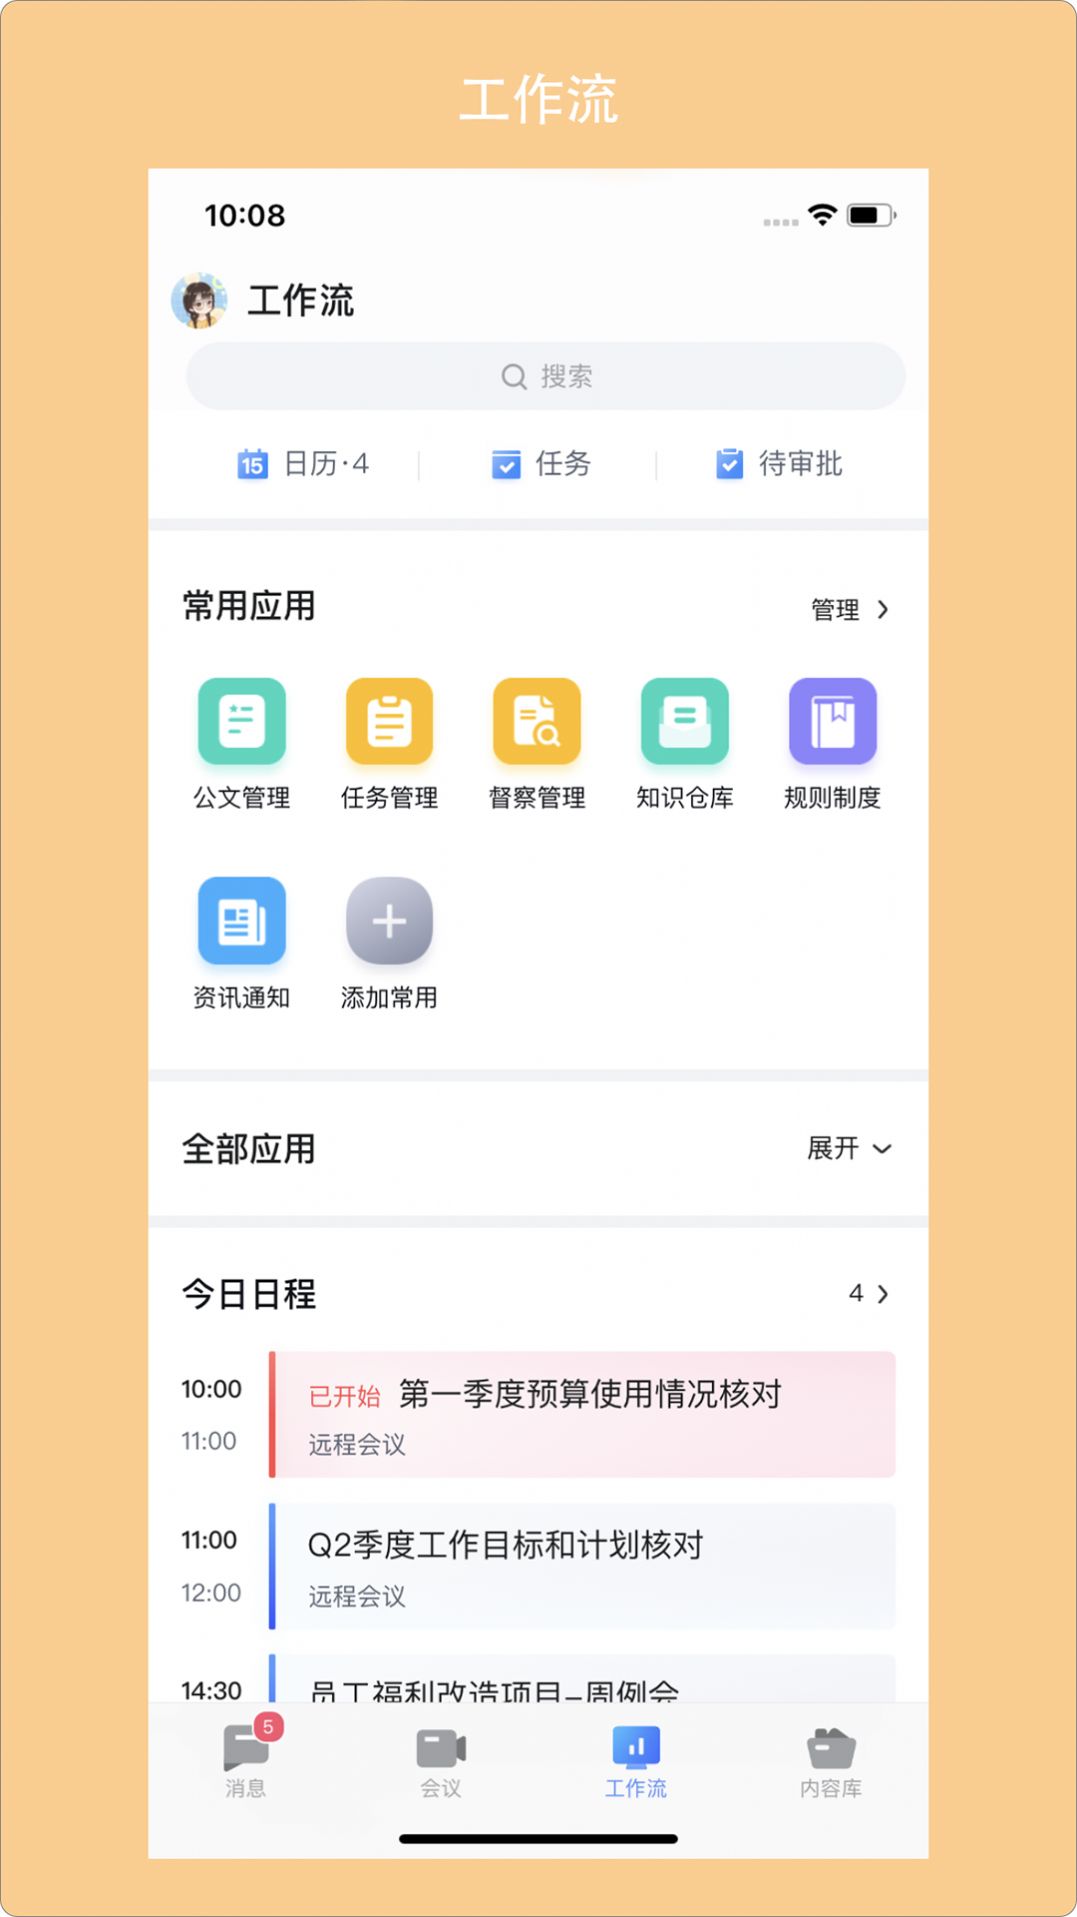 青岛广电app图1